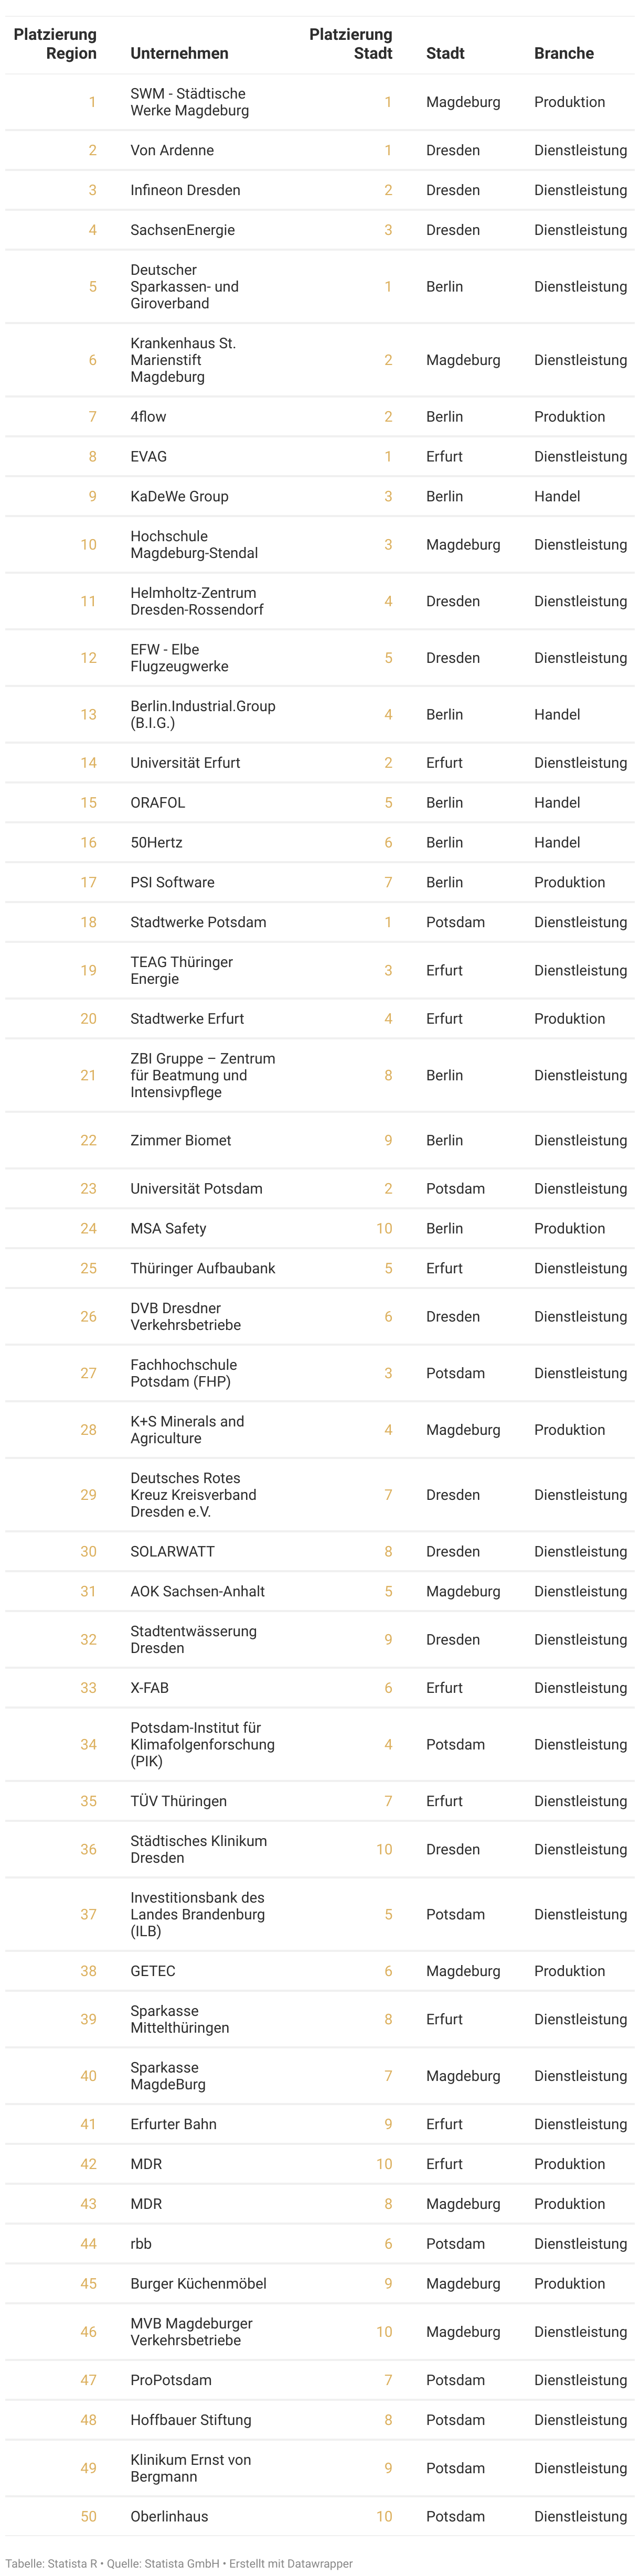 Rangliste der attraktivsten Arbeitgeber der Region Ostdeutschland des Jahres 2023